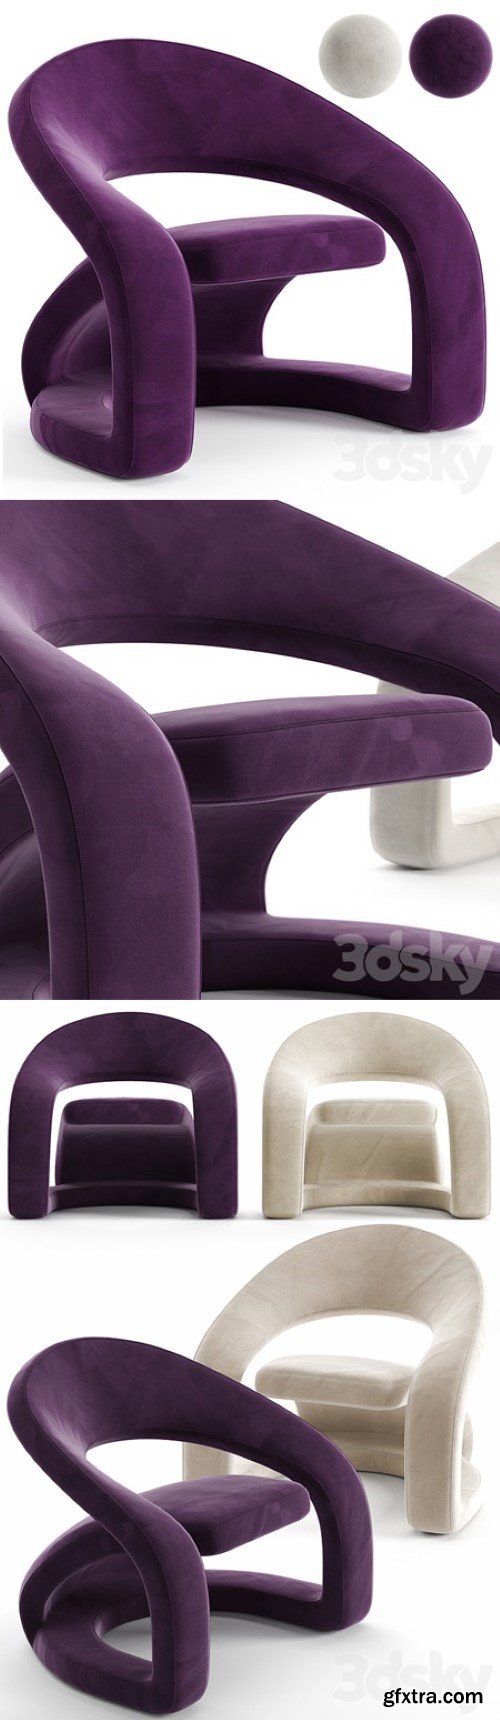 Jaymar Cantilevered Pop Art Chair